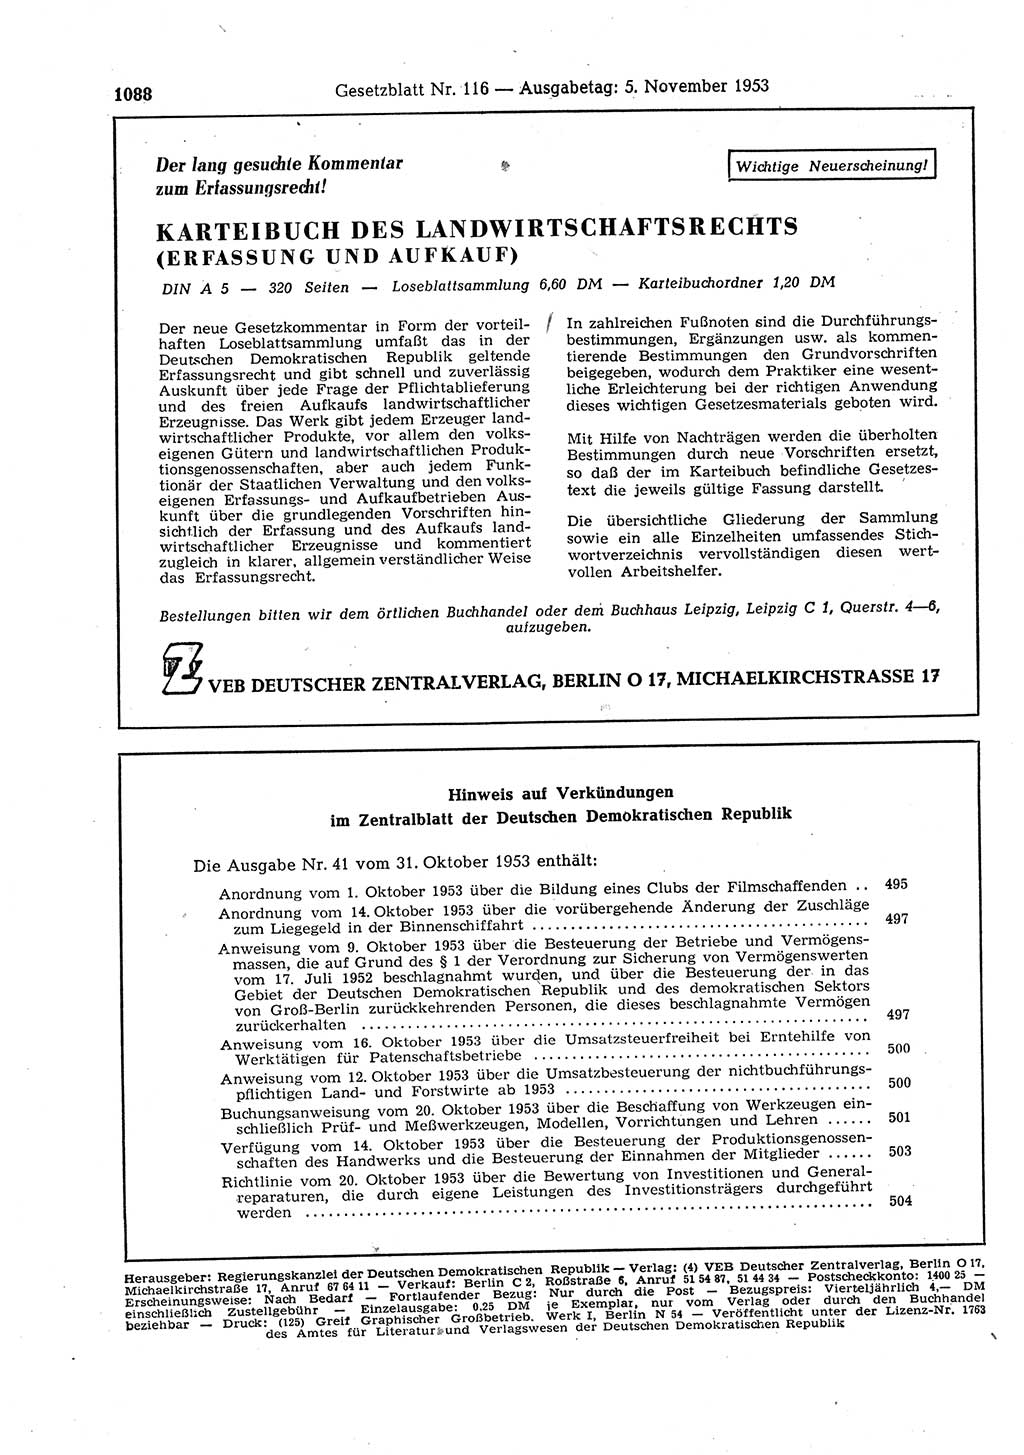 Gesetzblatt (GBl.) der Deutschen Demokratischen Republik (DDR) 1953, Seite 1088 (GBl. DDR 1953, S. 1088)